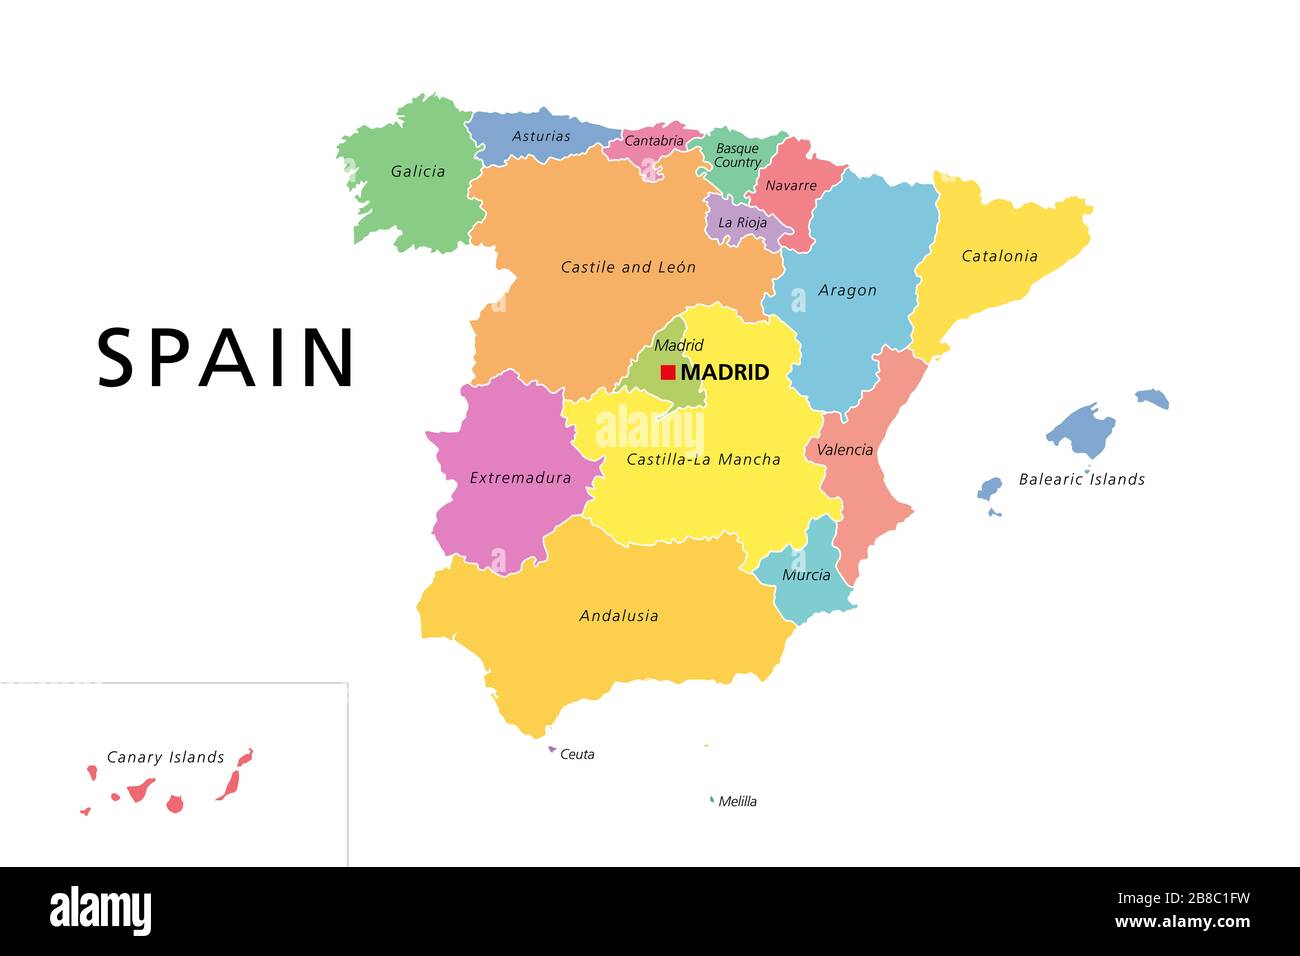 Spanien politische Karte mit farbigen administrativen Unterteilungen. Königreich Spanien mit der Hauptstadt Madrid und den Autonomen Gemeinschaften. Englische Kennzeichnung. Stockfoto